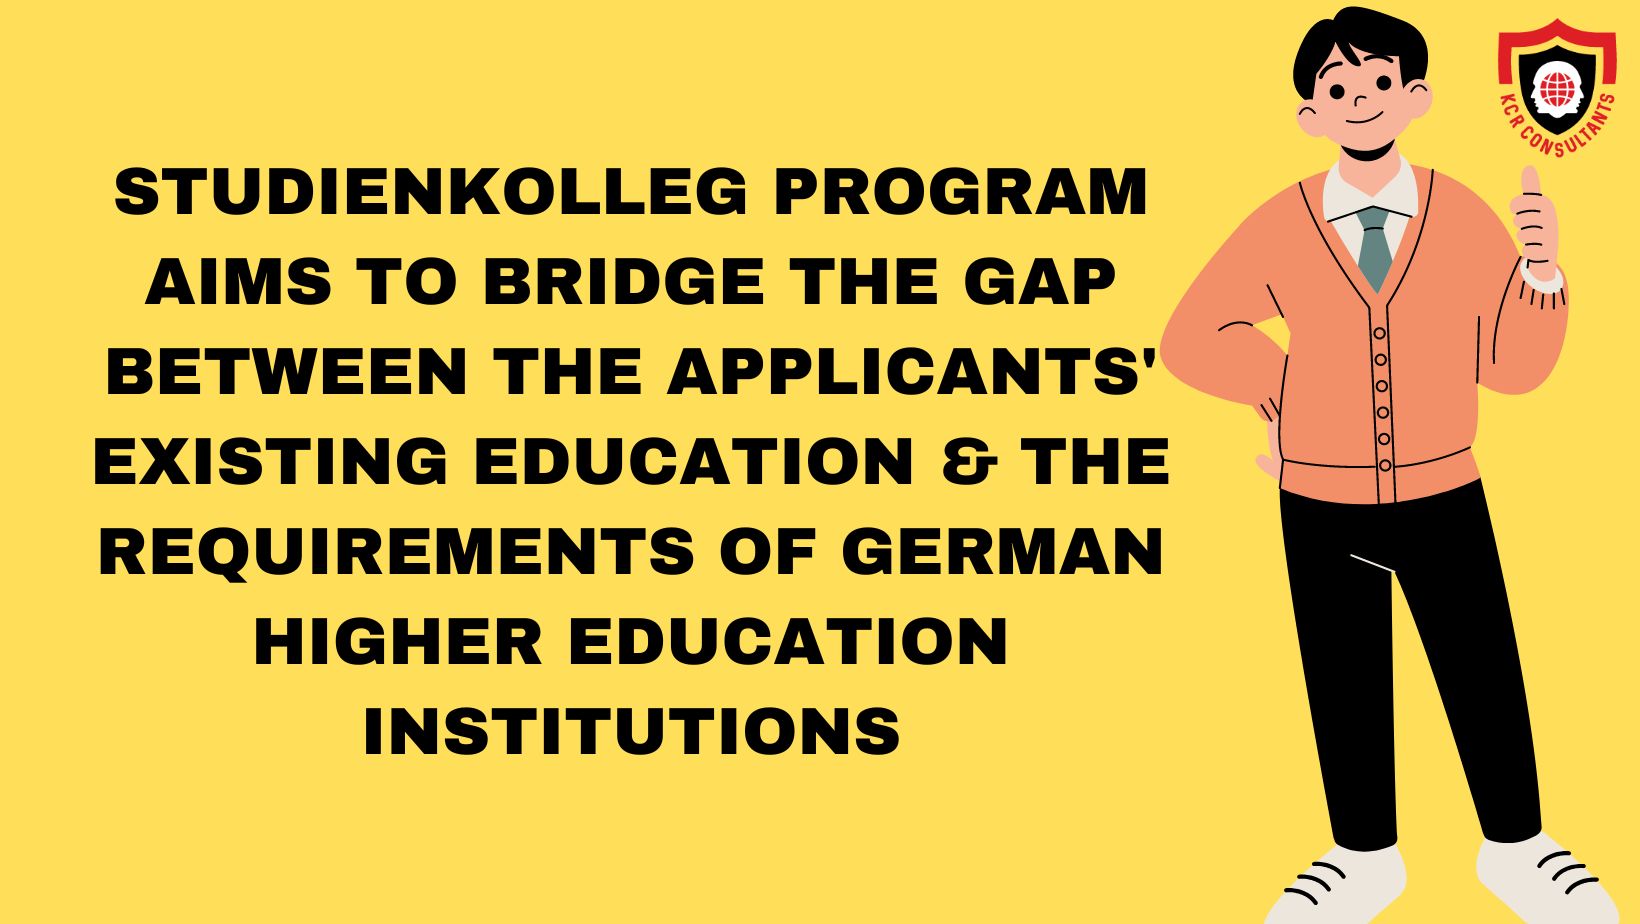 Studienkolleg in Germany - German higher education institutions